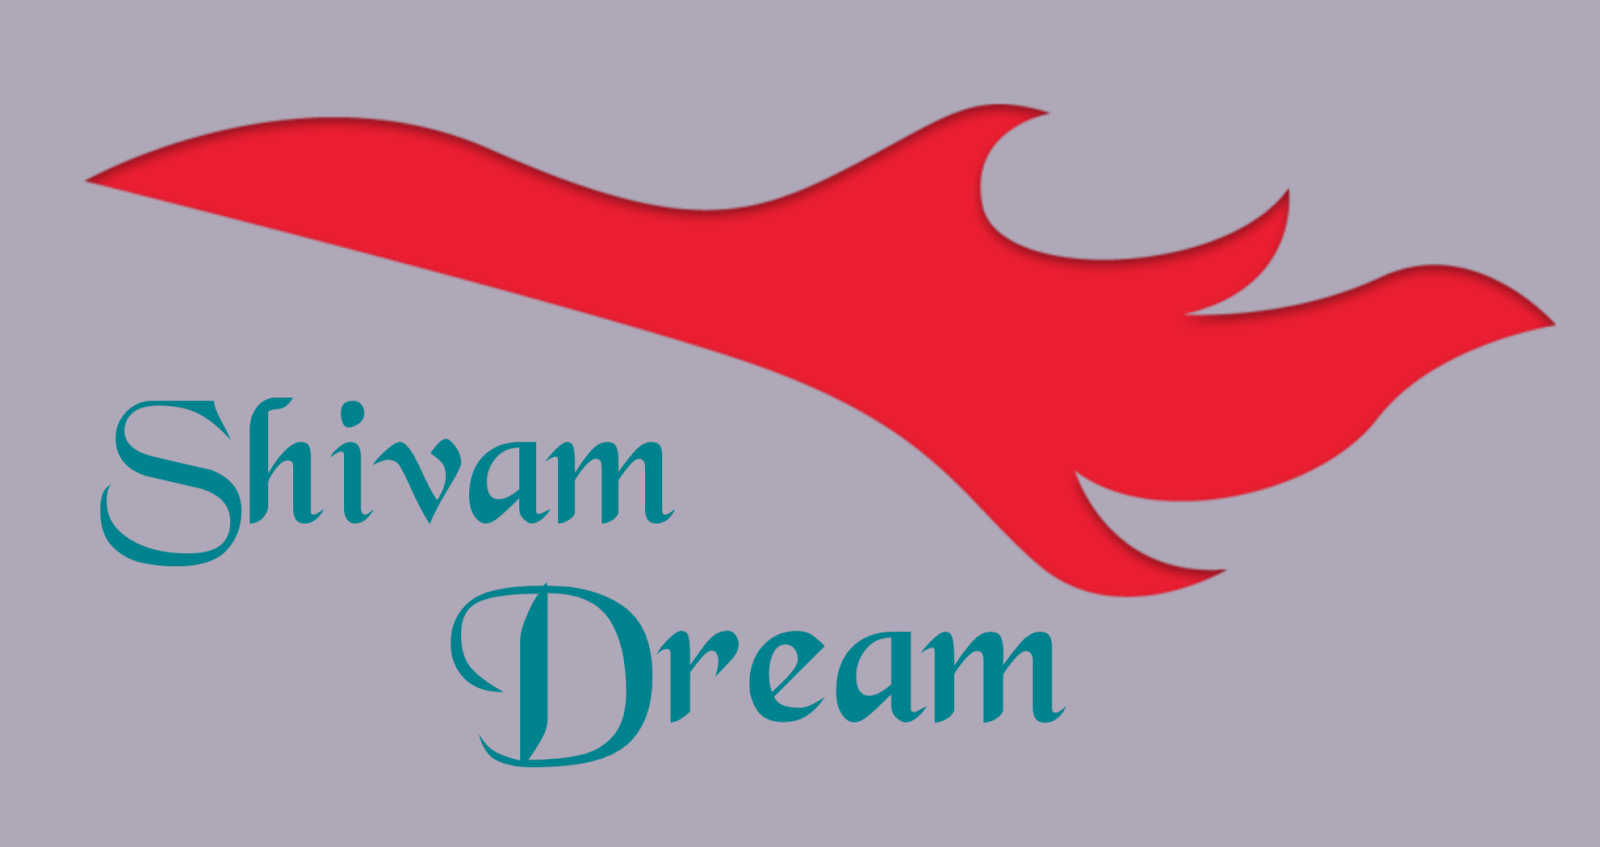 Shivam dream